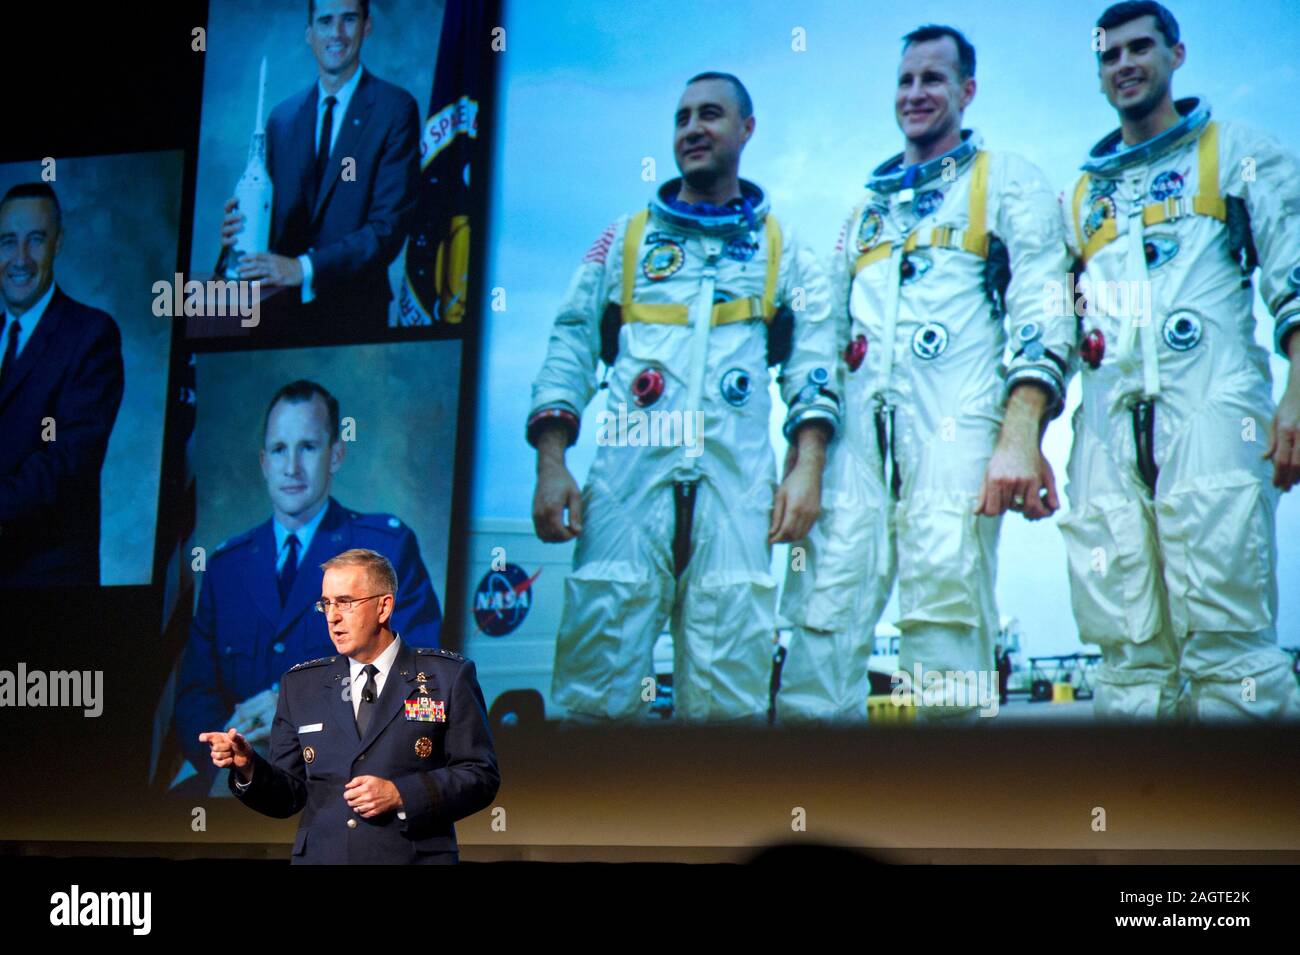 US Air Force général et vice-président de l'état-major John Hyten parle de l'espace à l'espace 2019 Symposium à Colorado Springs aux États-Unis. Banque D'Images